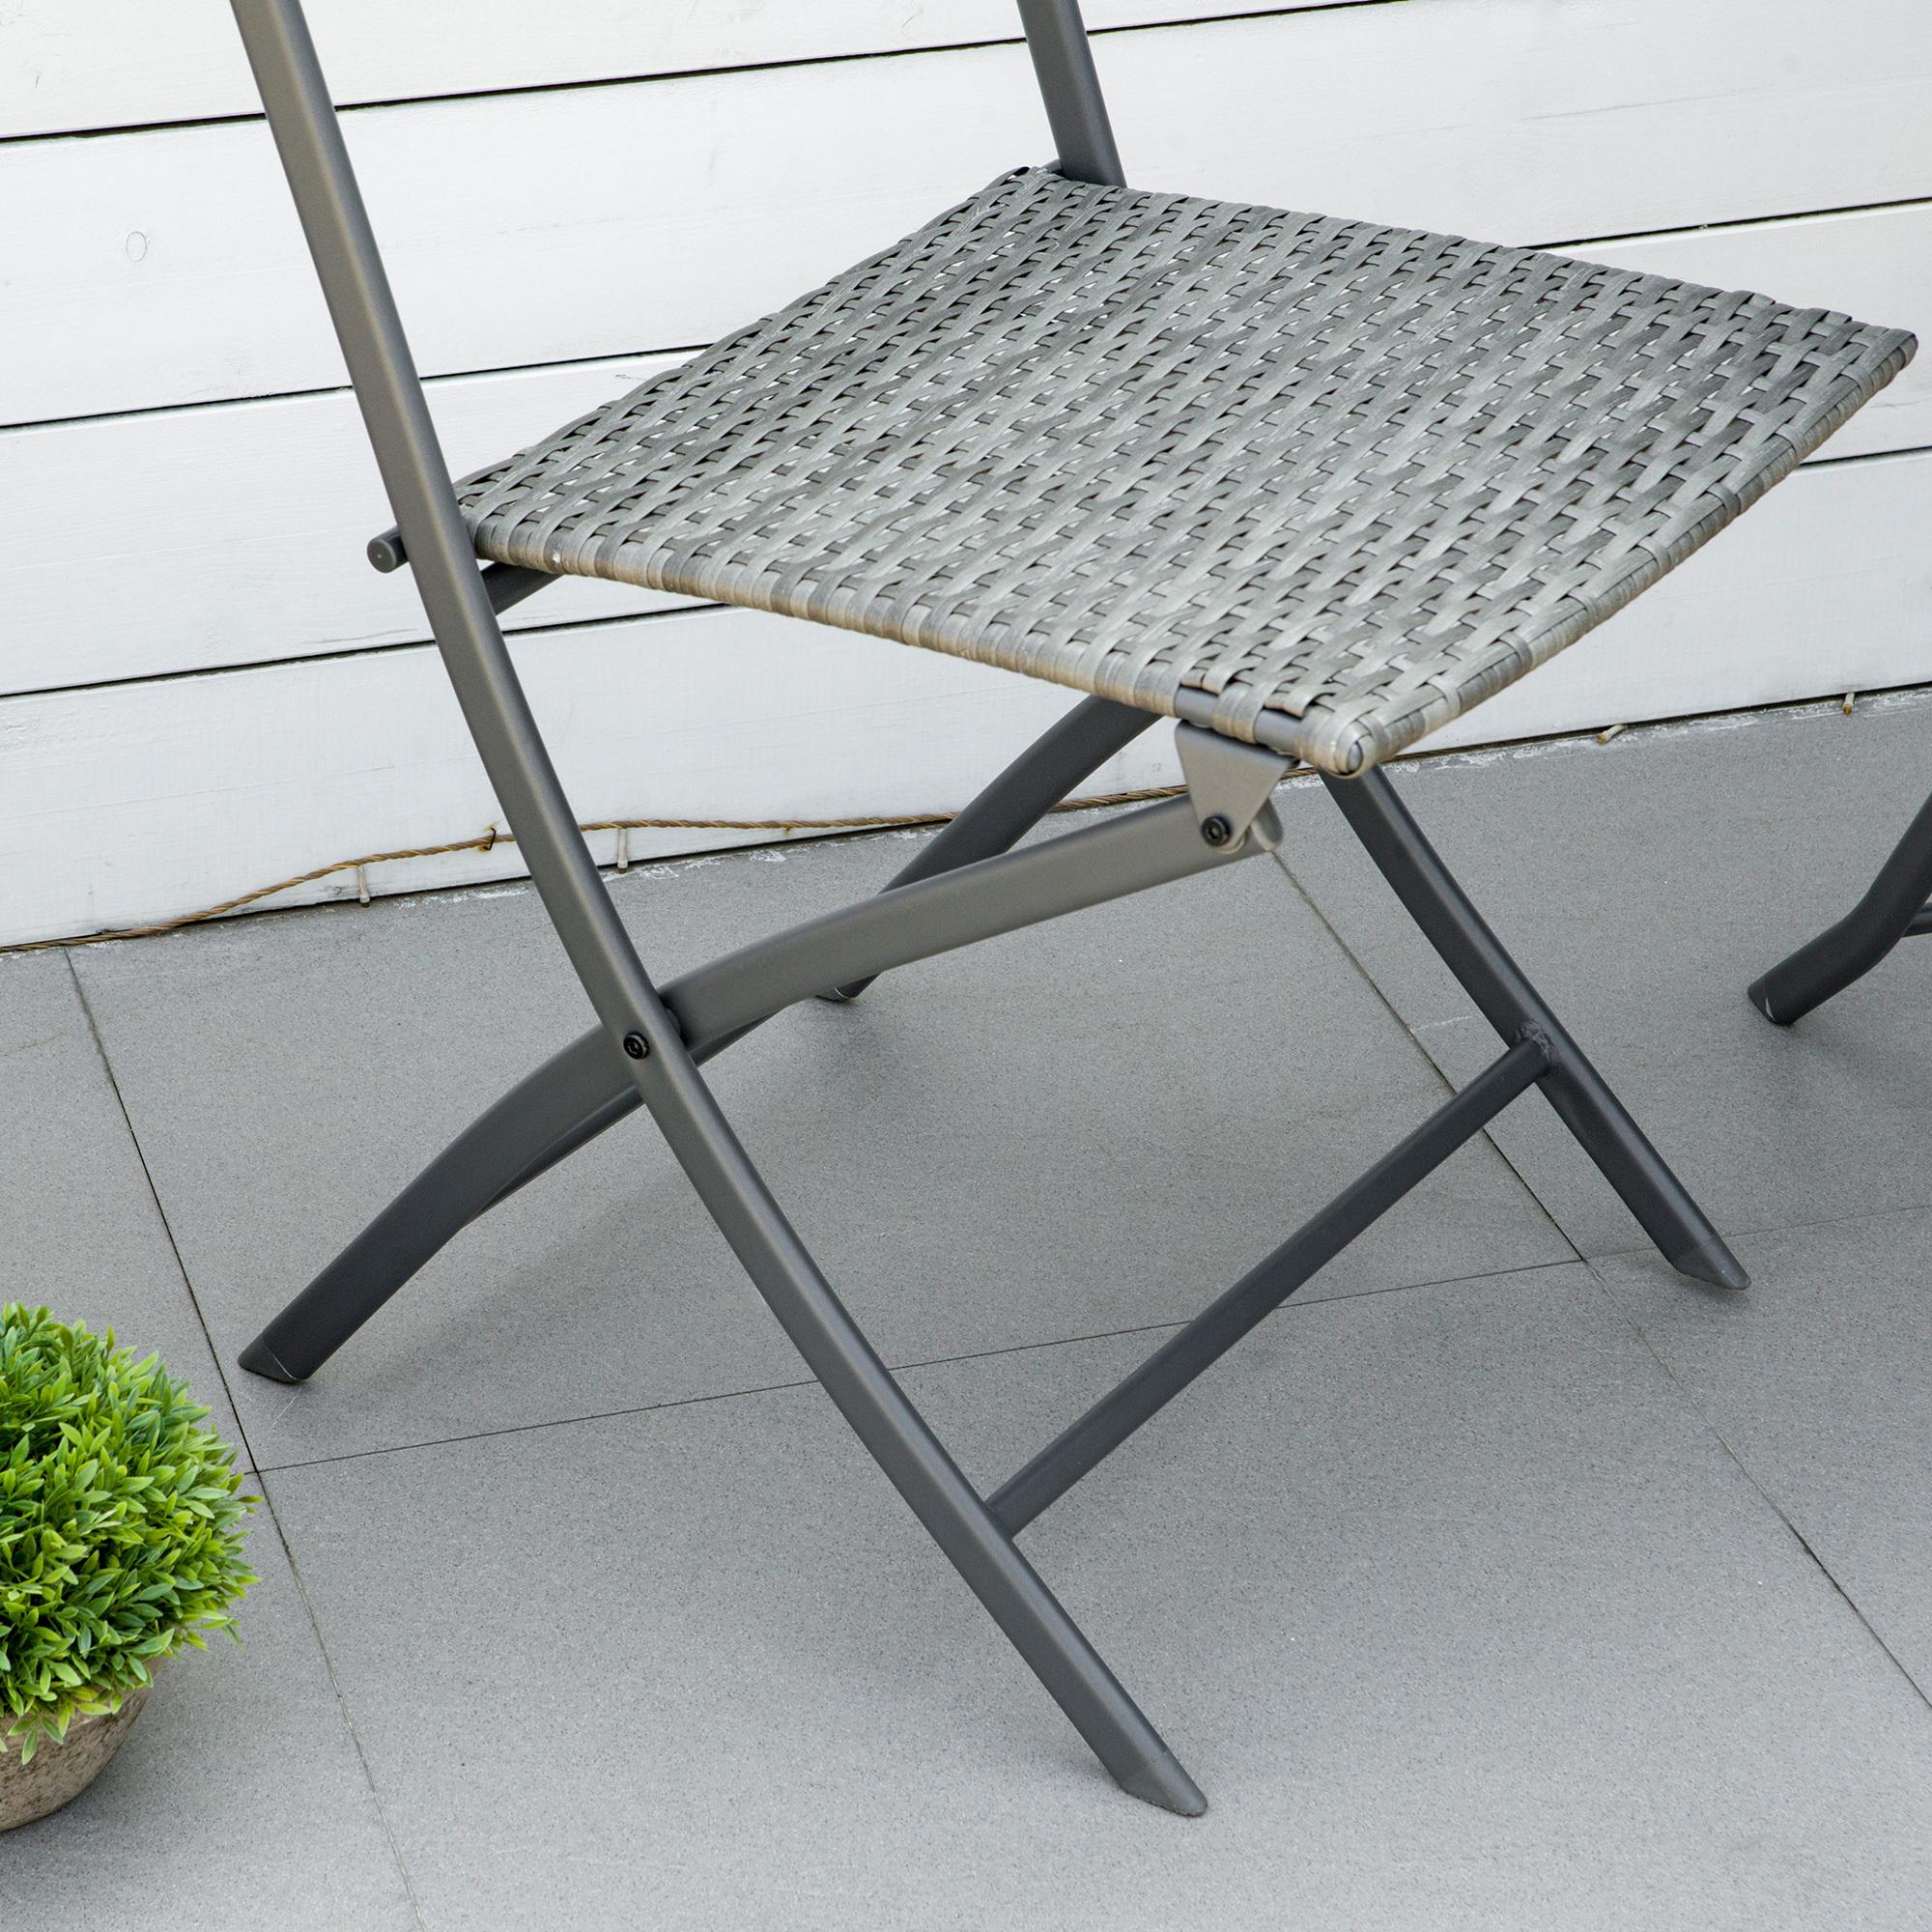 Ensemble meubles de jardin design table carré et chaises pliables résine tressée imitation rotin gris